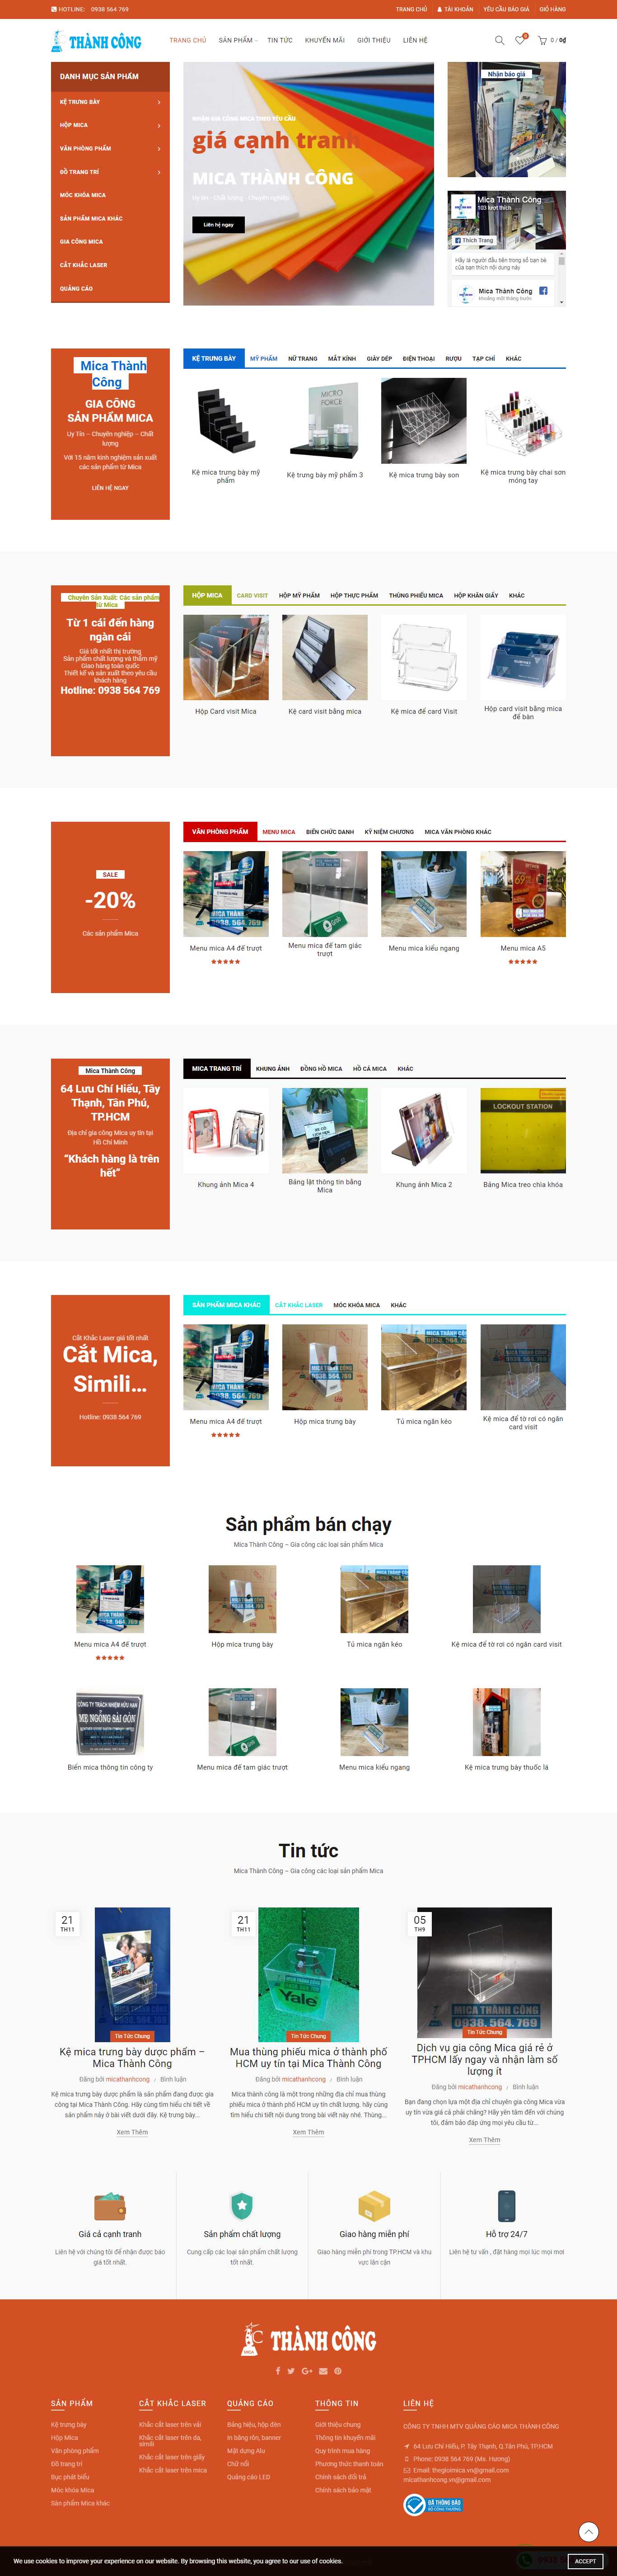 Thiết kế Website sản phẩm nhựa MICA - micathanhcong.vn